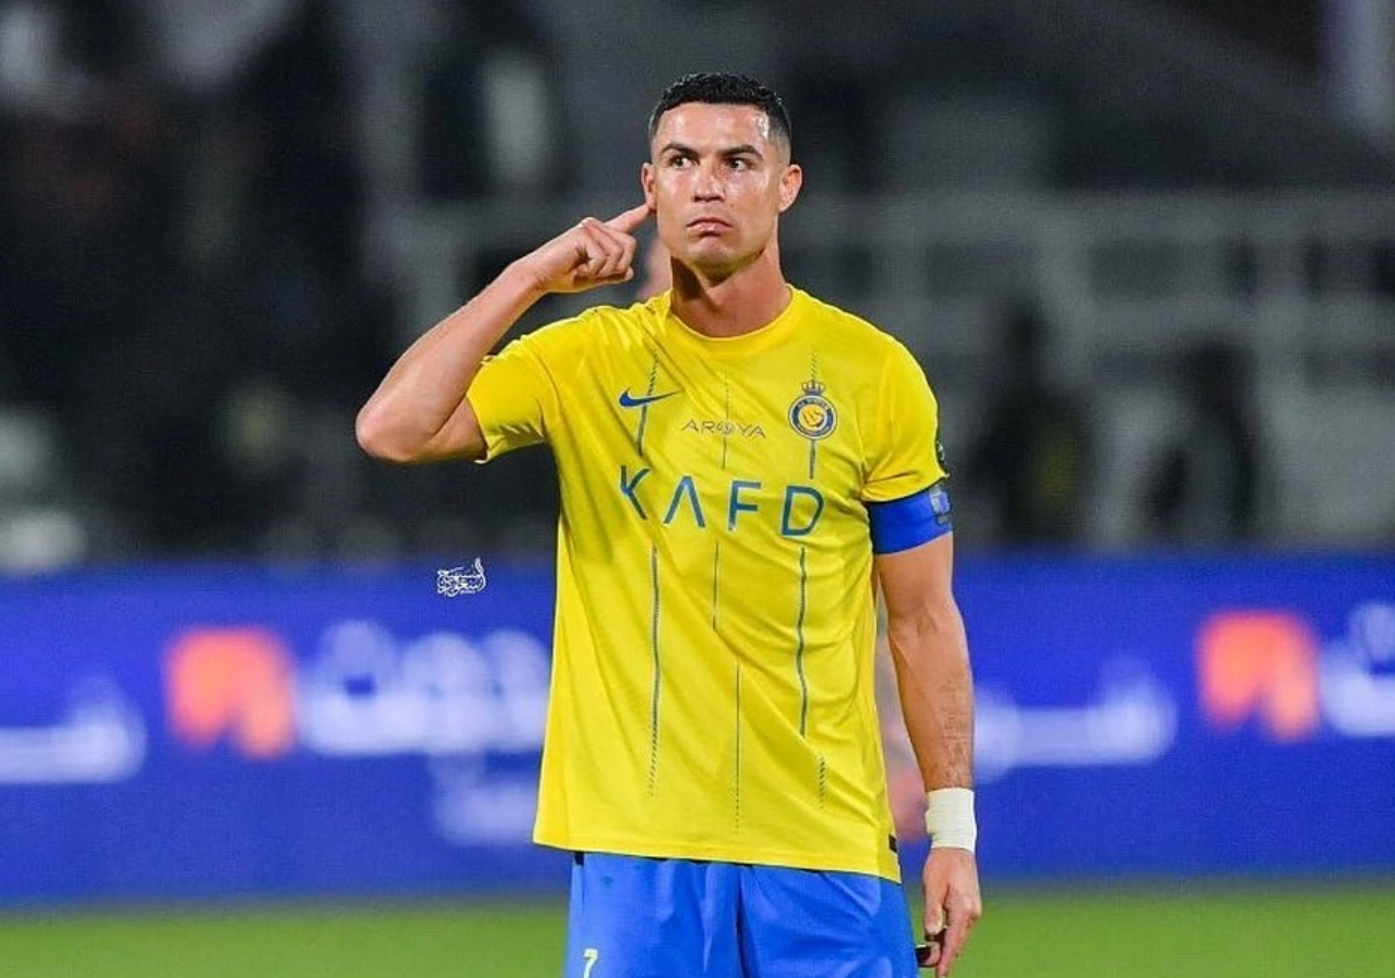 Top 5 cầu thủ ra sân nhiều nhất tại các kỳ Euro: Ronaldo đứng đầu